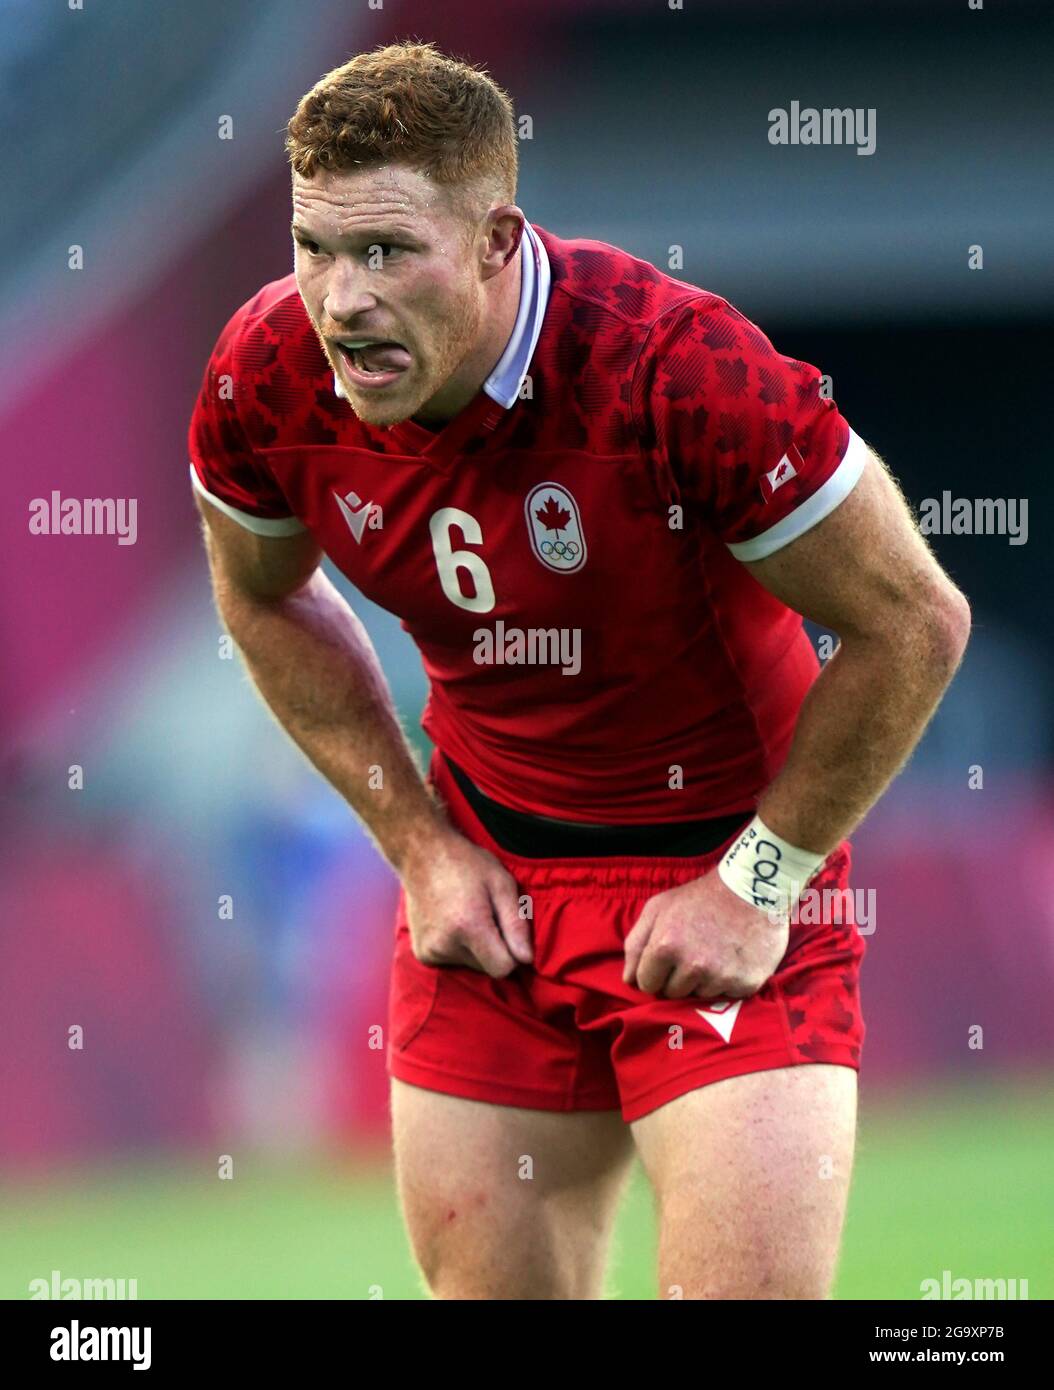 Connor Braid de Canadá durante los siete partidos de rugby masculino, que se celebraron en 7-8 en el estadio de Tokio el quinto día de los Juegos Olímpicos de Tokio 2020 en Japón. Fecha de la foto: Miércoles 28 de julio de 2021. Foto de stock